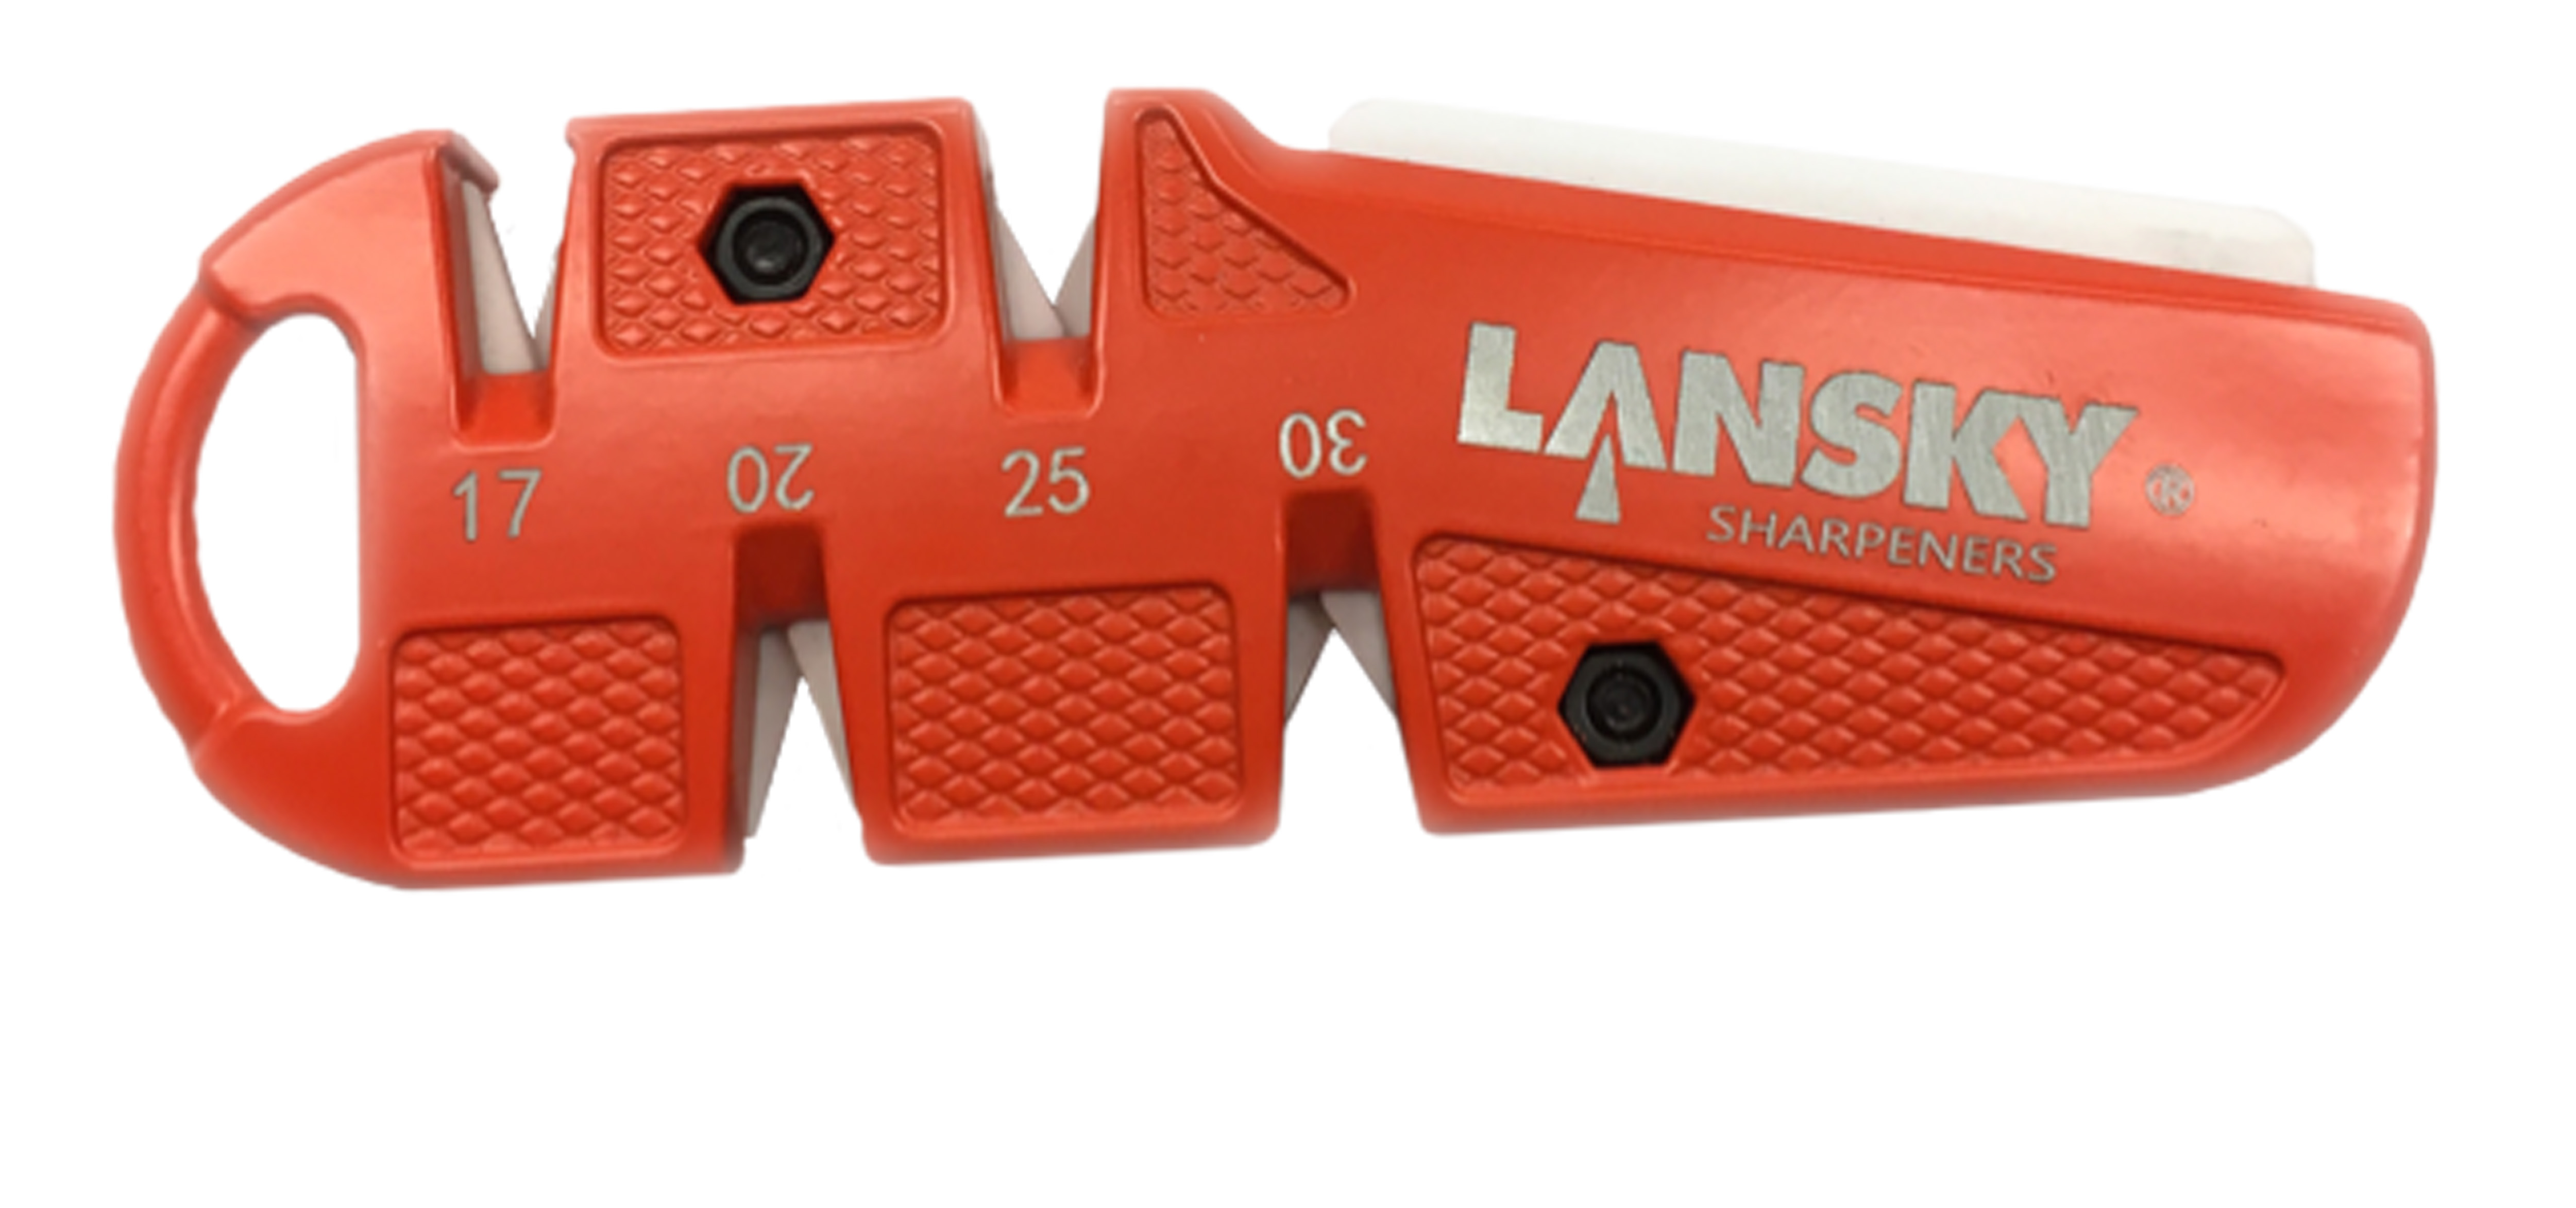 LANSKY Sharpeners 5 in 1 C-Sharp Multi Angle Ceramic Pocket Sharpener 